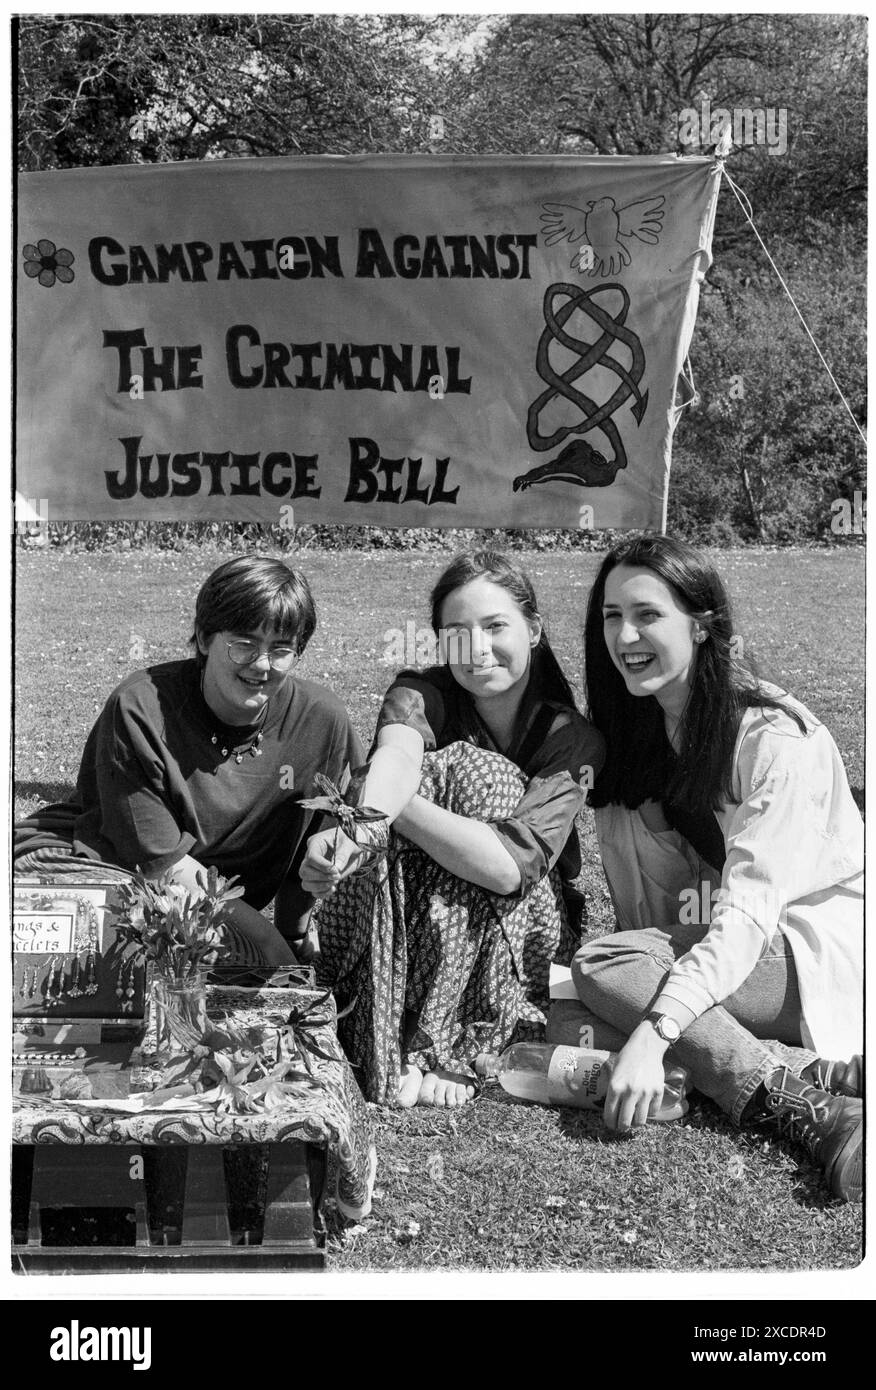 ALICE ROBERTS, DÉMONSTRATION DU PROJET DE LOI SUR LA JUSTICE PÉNALE, 1994 : Alice Roberts (au centre) – aujourd'hui professeure Alice Roberts – est assise sur l'herbe dans un étalage de bijoux avec des amis lors de la manifestation du projet de loi sur la campagne contre la justice pénale à City Lawns à Cardiff, au pays de Galles, au Royaume-Uni, le 30 avril 1994. Alice Roberts était étudiante en médecine à l'Université de Cardiff à l'époque et avait une bande dessinée populaire en tant qu'artiste pour le journal étudiant de Cardiff Gair Rhydd. Photo : Rob Watkins Banque D'Images